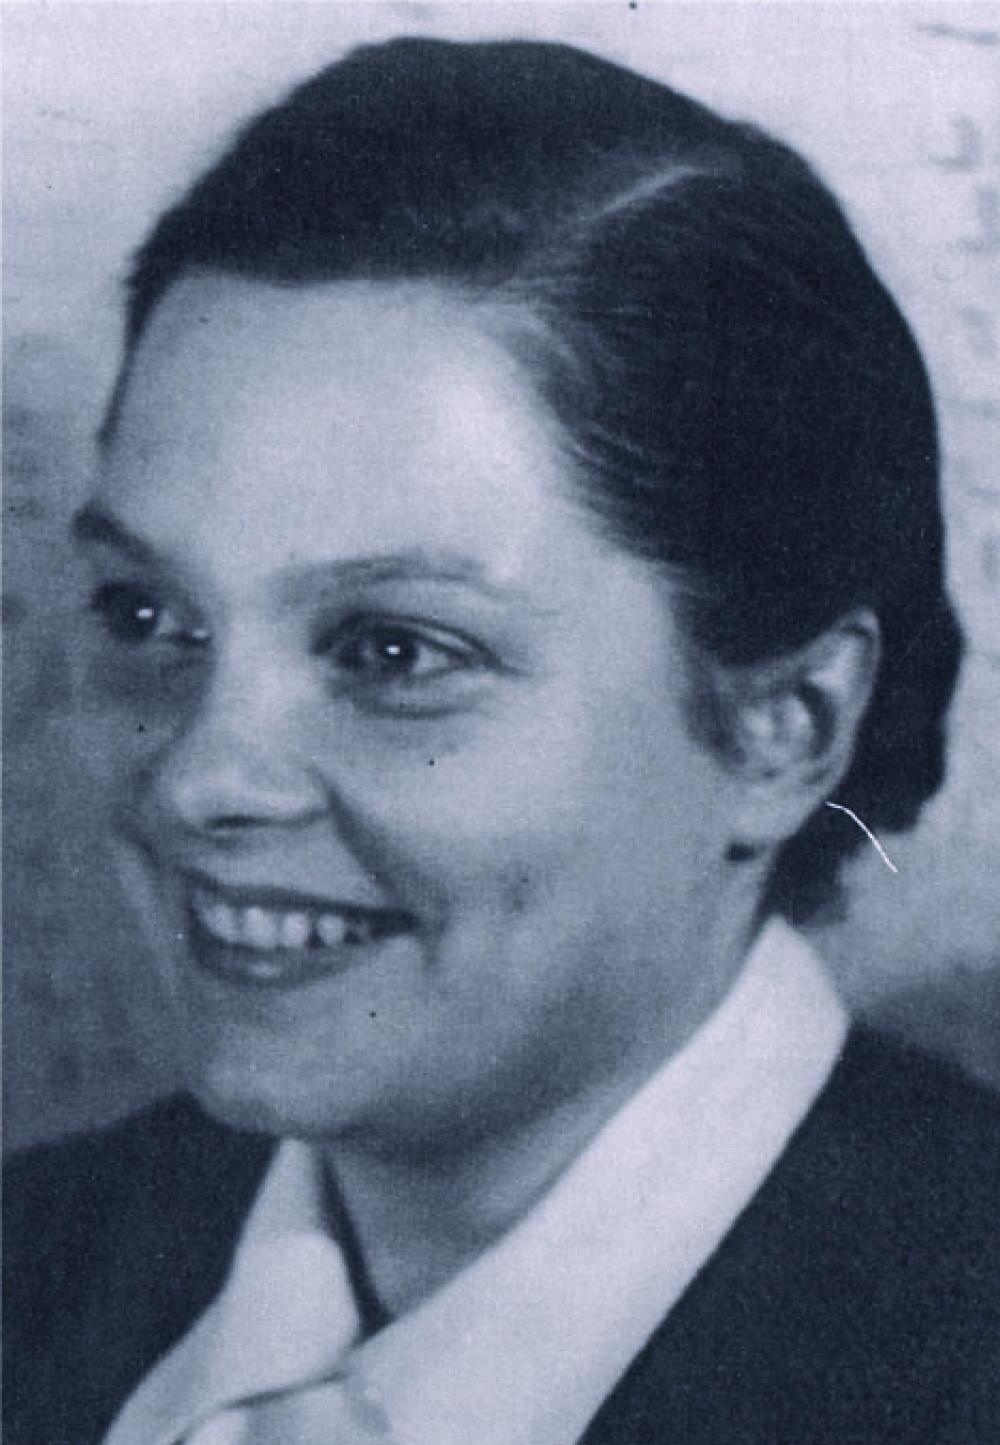 Ruth Hartmann in an undated photo.